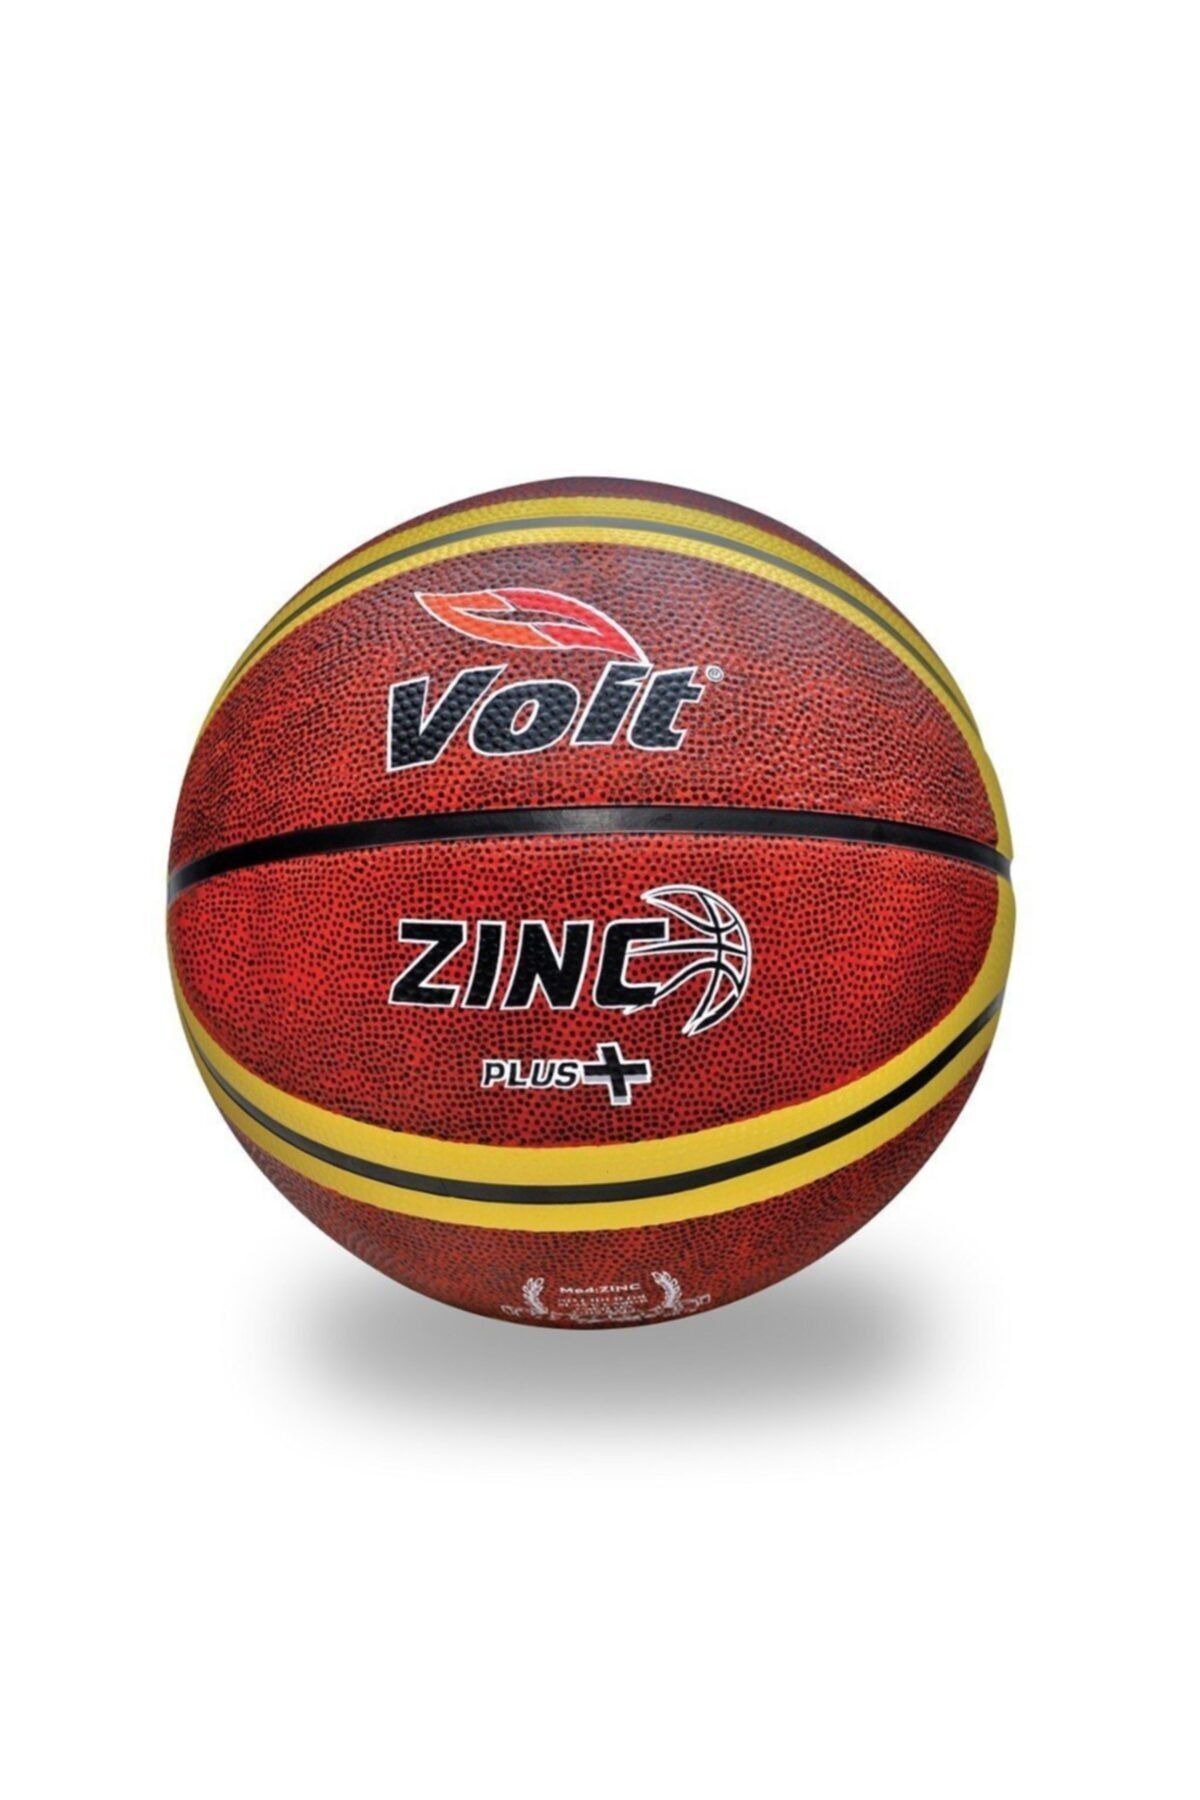 Voit Zınc Plus Basketbol Topu N:5 1VTTPZINCPLUSN5